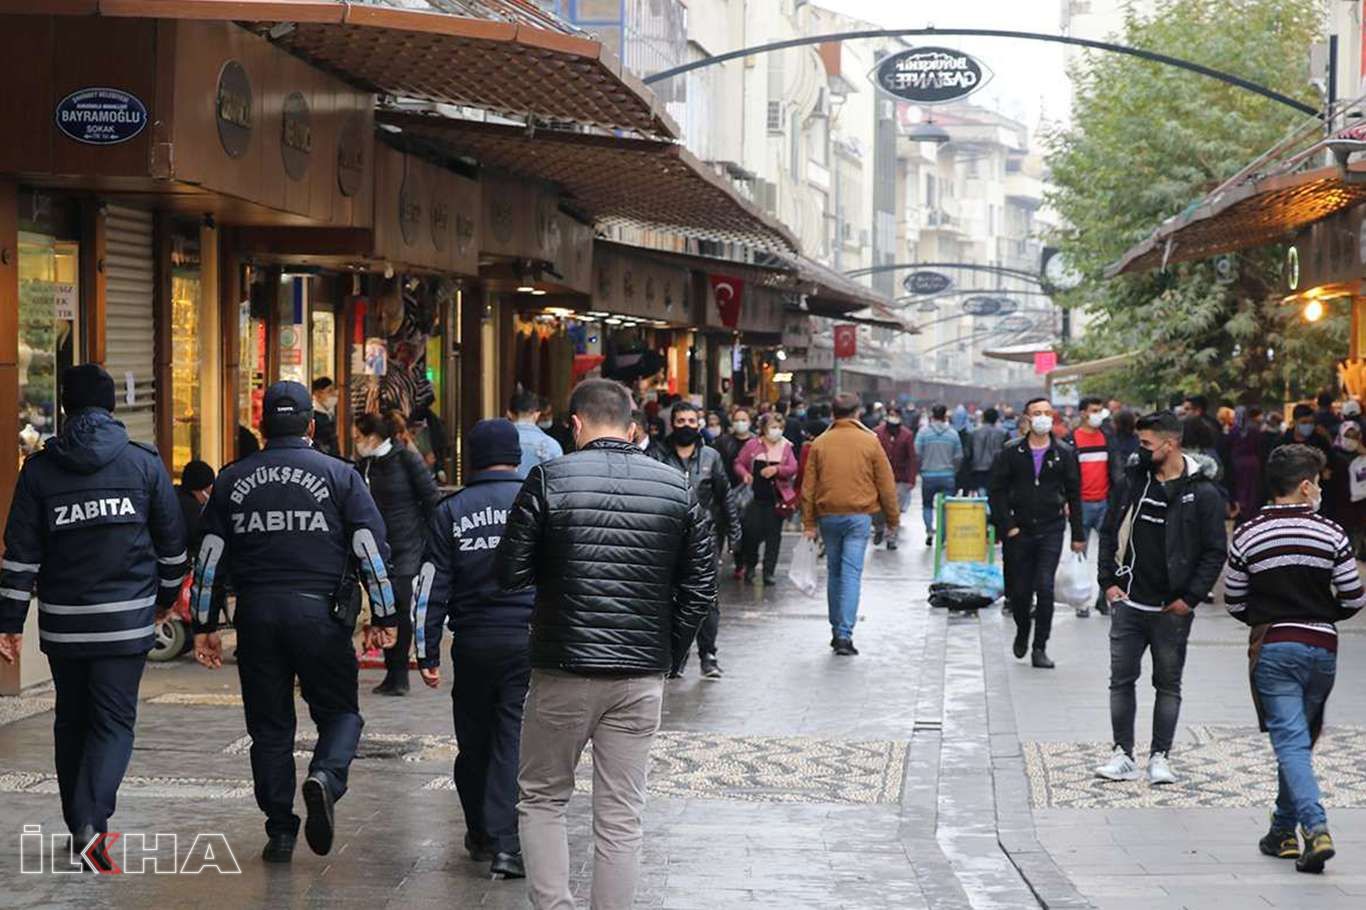 Gaziantep'te Covid-19 kurallarını ihlal eden 565 kişiye para cezası